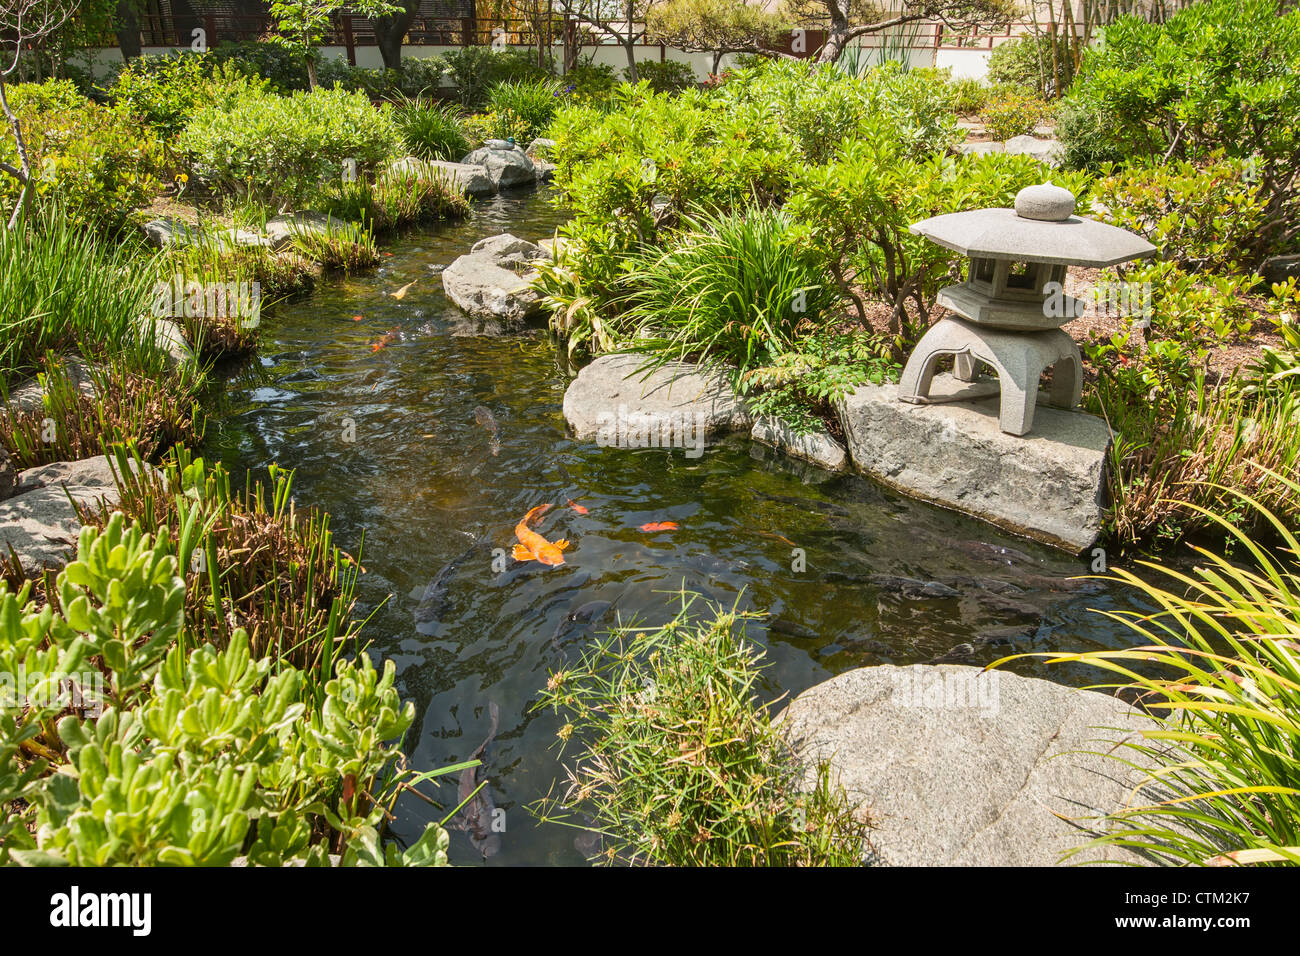 Gli splendidi giardini giapponesi che si trova nella città di speranza Cancer Center. Foto Stock